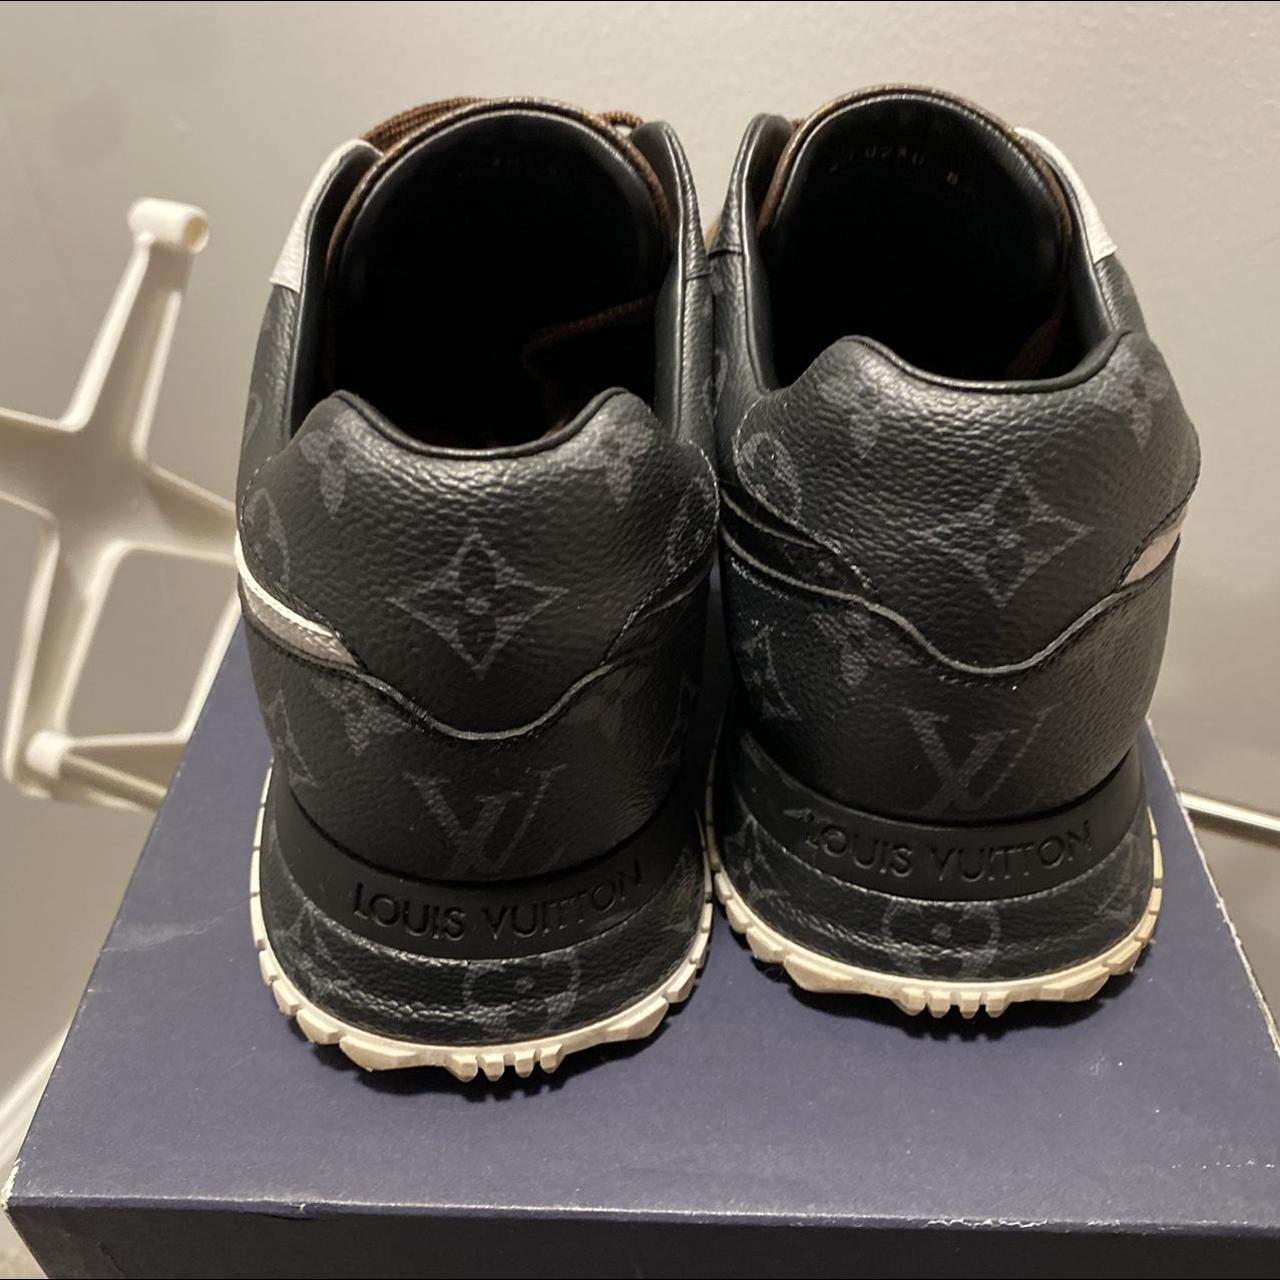 Louis Vuitton Run Away Pulse Sneaker Boots From - Depop